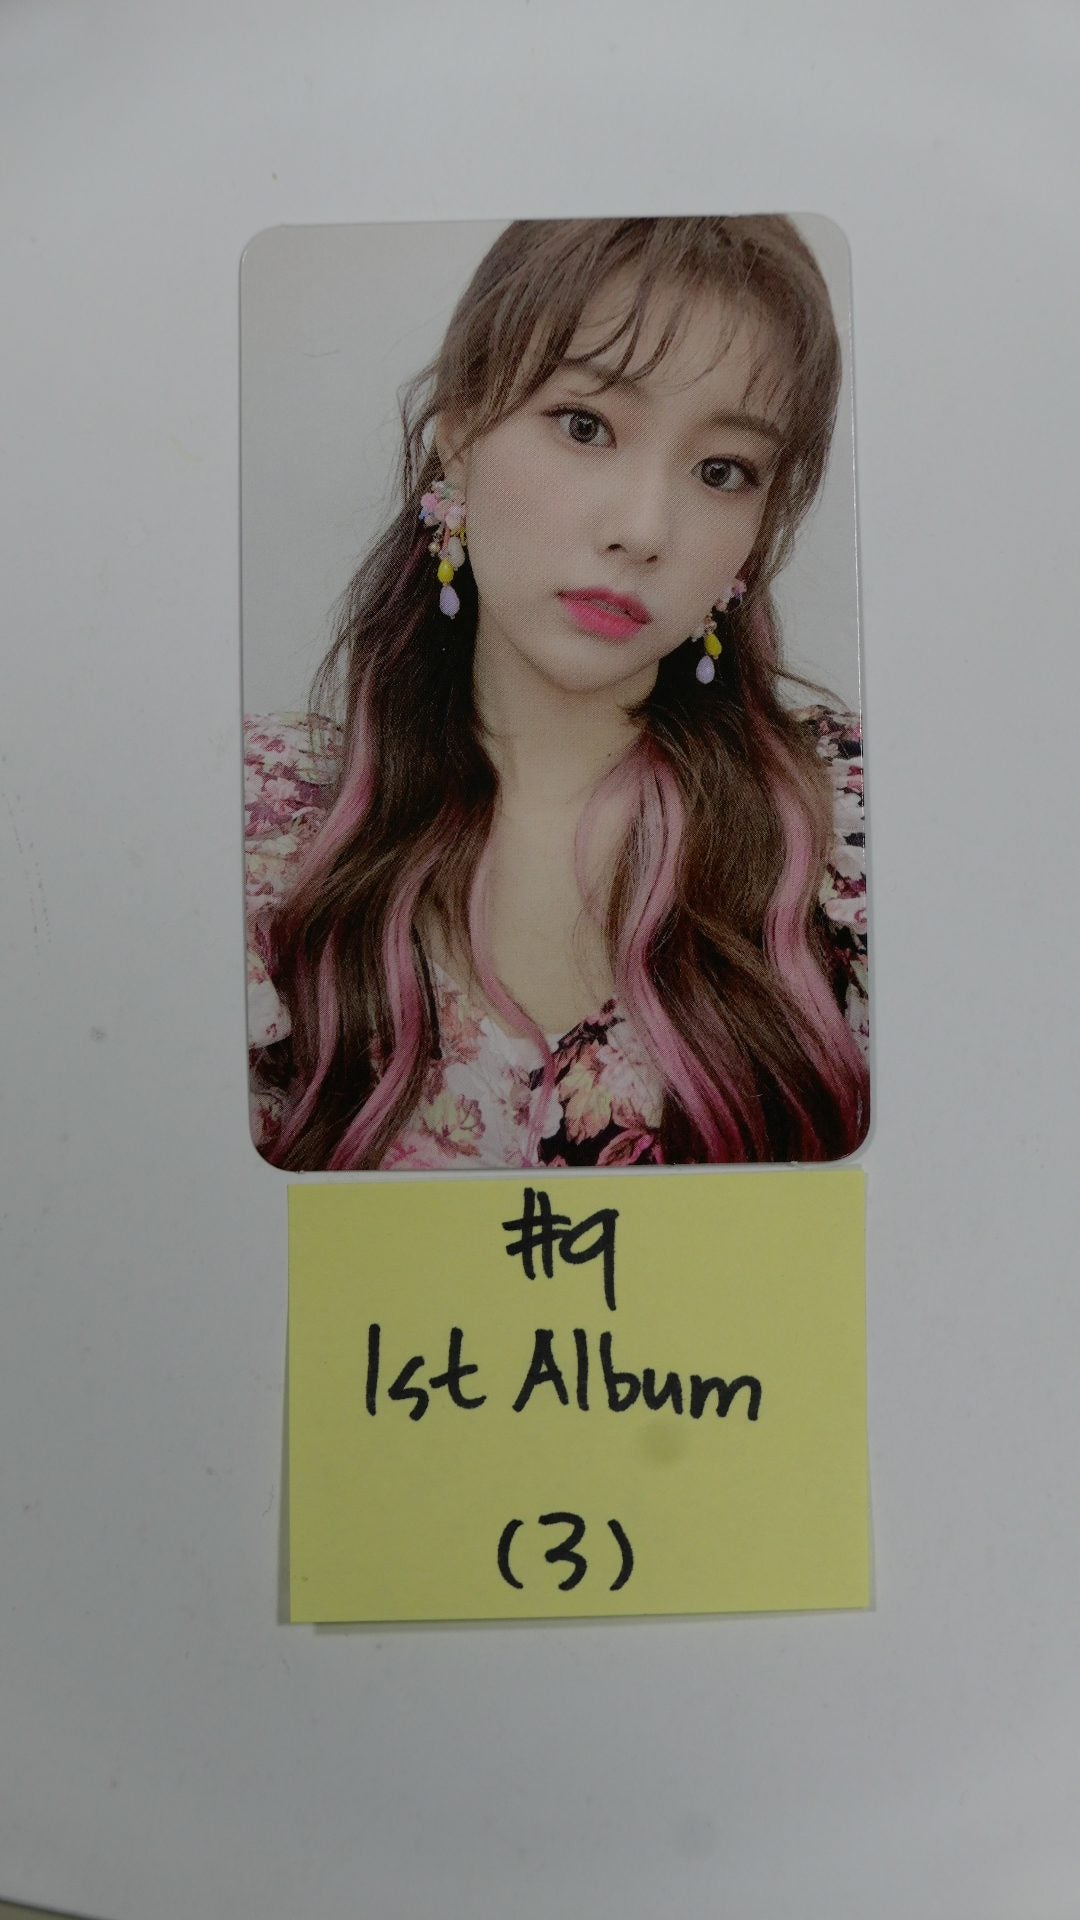 IZ*ONE IZONE 'BLOOM*IZ' / VOL.1- Official Photocard - Hyewon